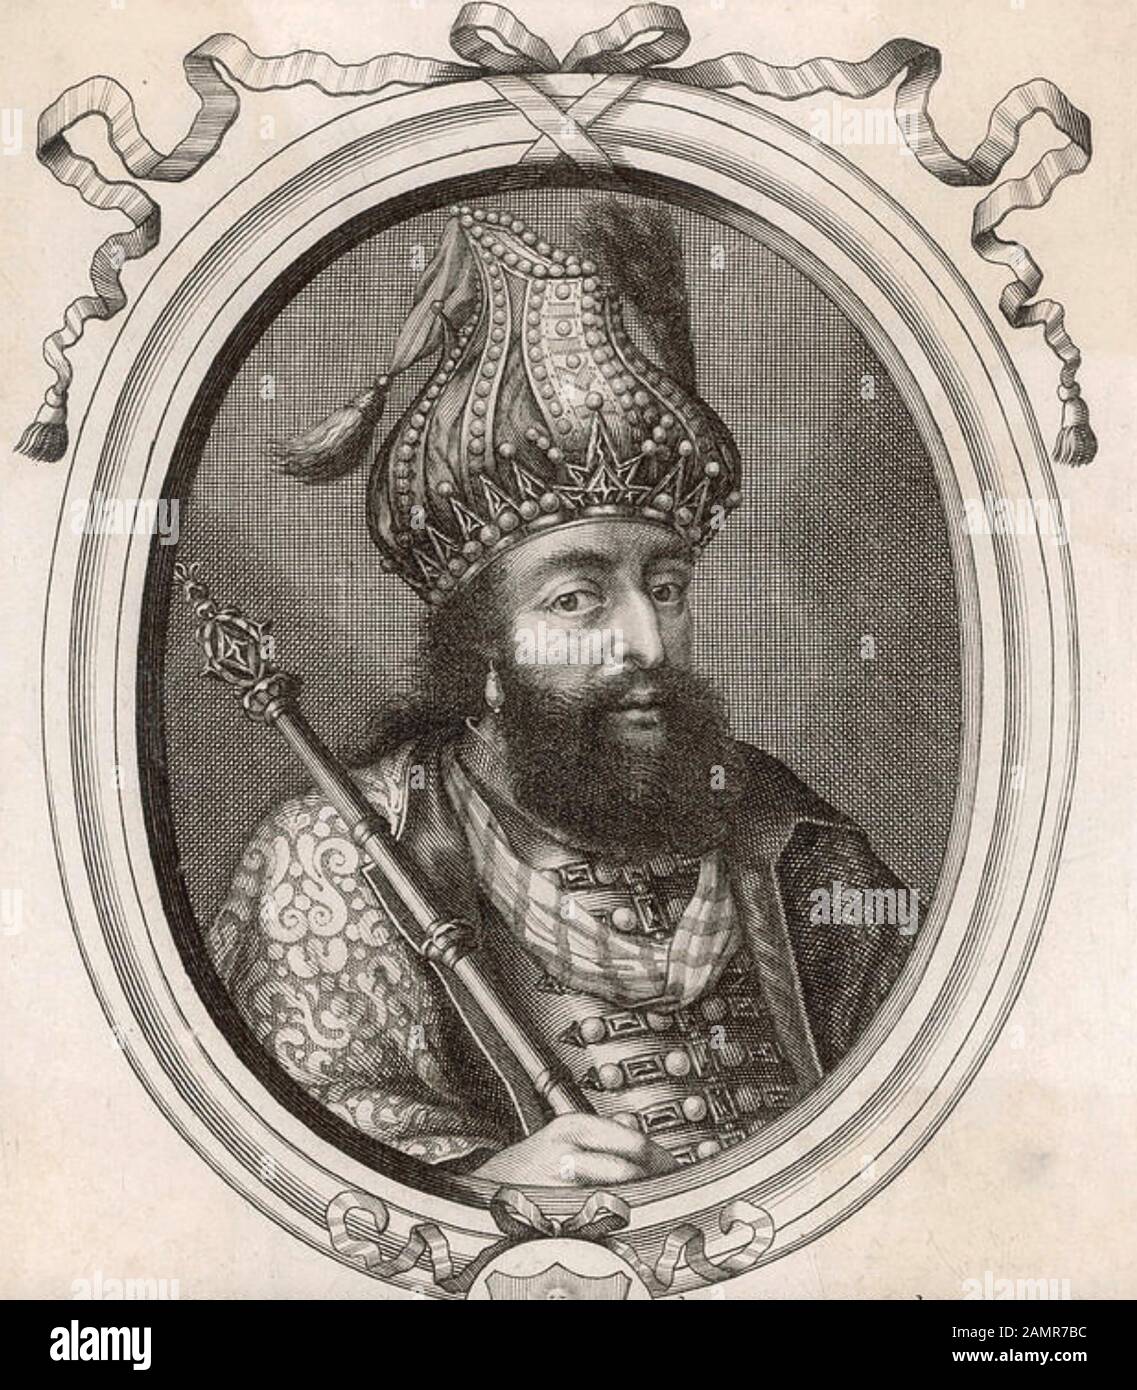 Shah JAHAN (1592-1666) cinquième empereur Mogul qui ordonna la construction du Taj Mahal Banque D'Images